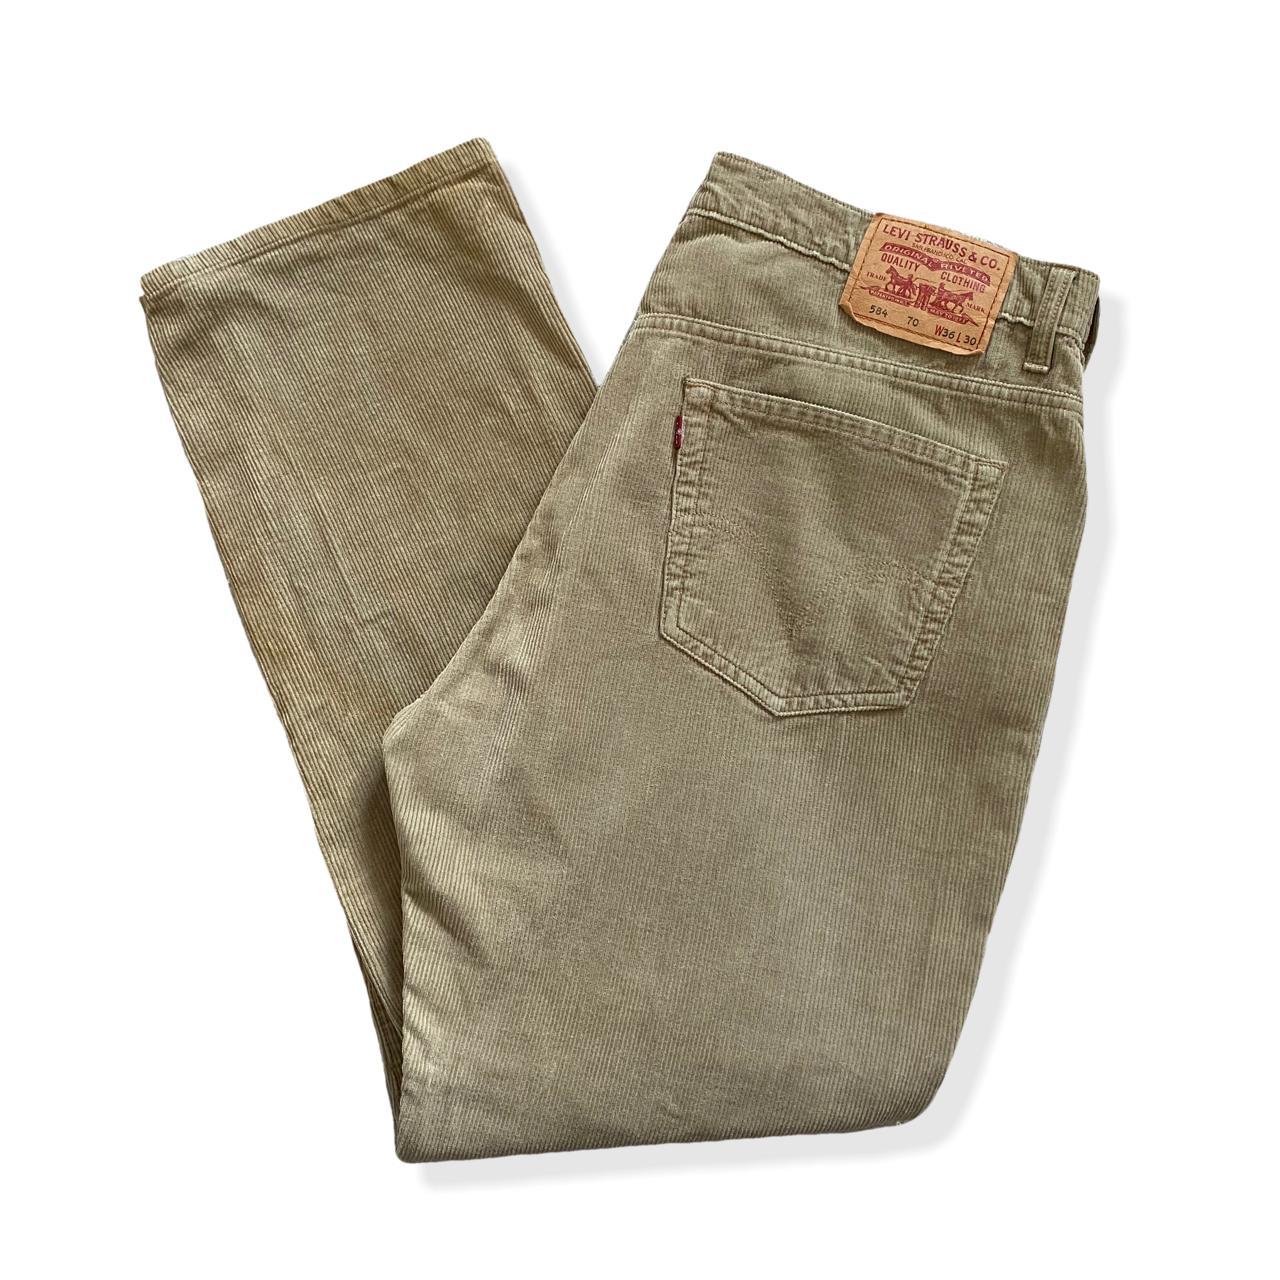 Vintage Levis 584 Corduroy Jeans W36 L30 👼🏻 Levi's... - Depop